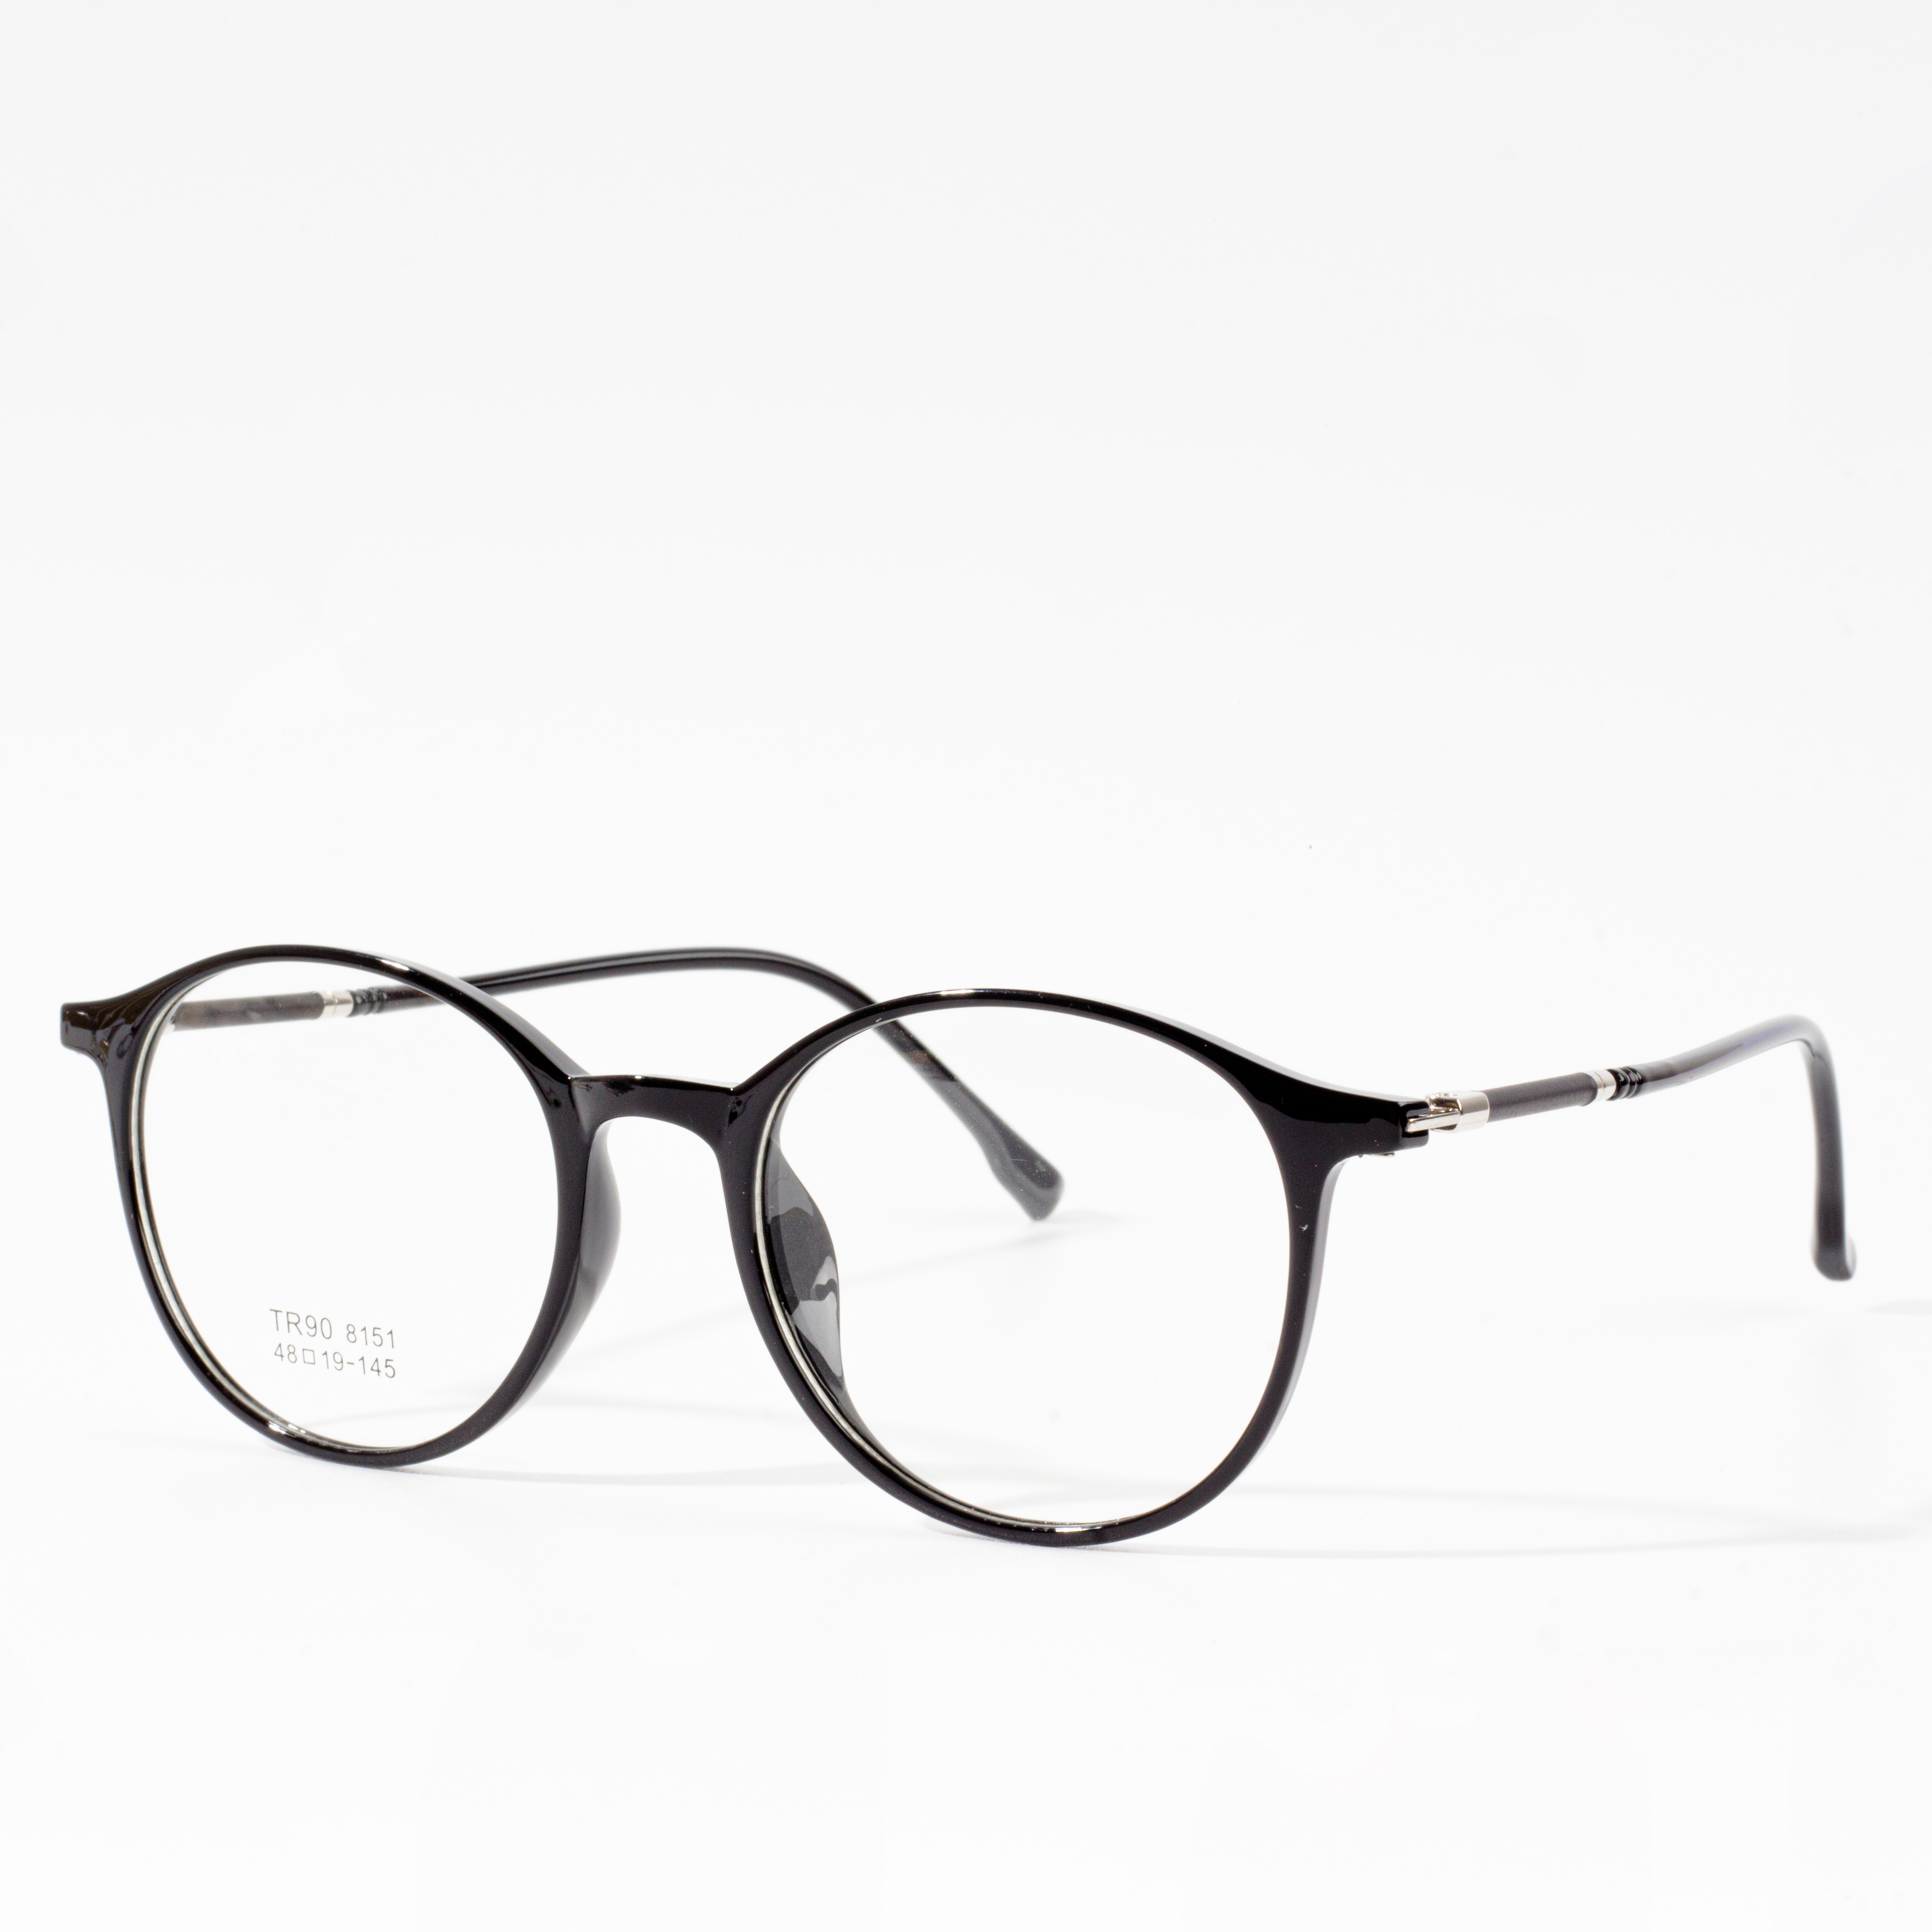 Männer & Damen Designer Frames - Eyeglasses.com 广告· https://www.eyeglasses.com/ (888) 896-3885 Shop Designer Frames Vun Top Global Brëller Marken Fir Halschent Off Retail Präisser haut.